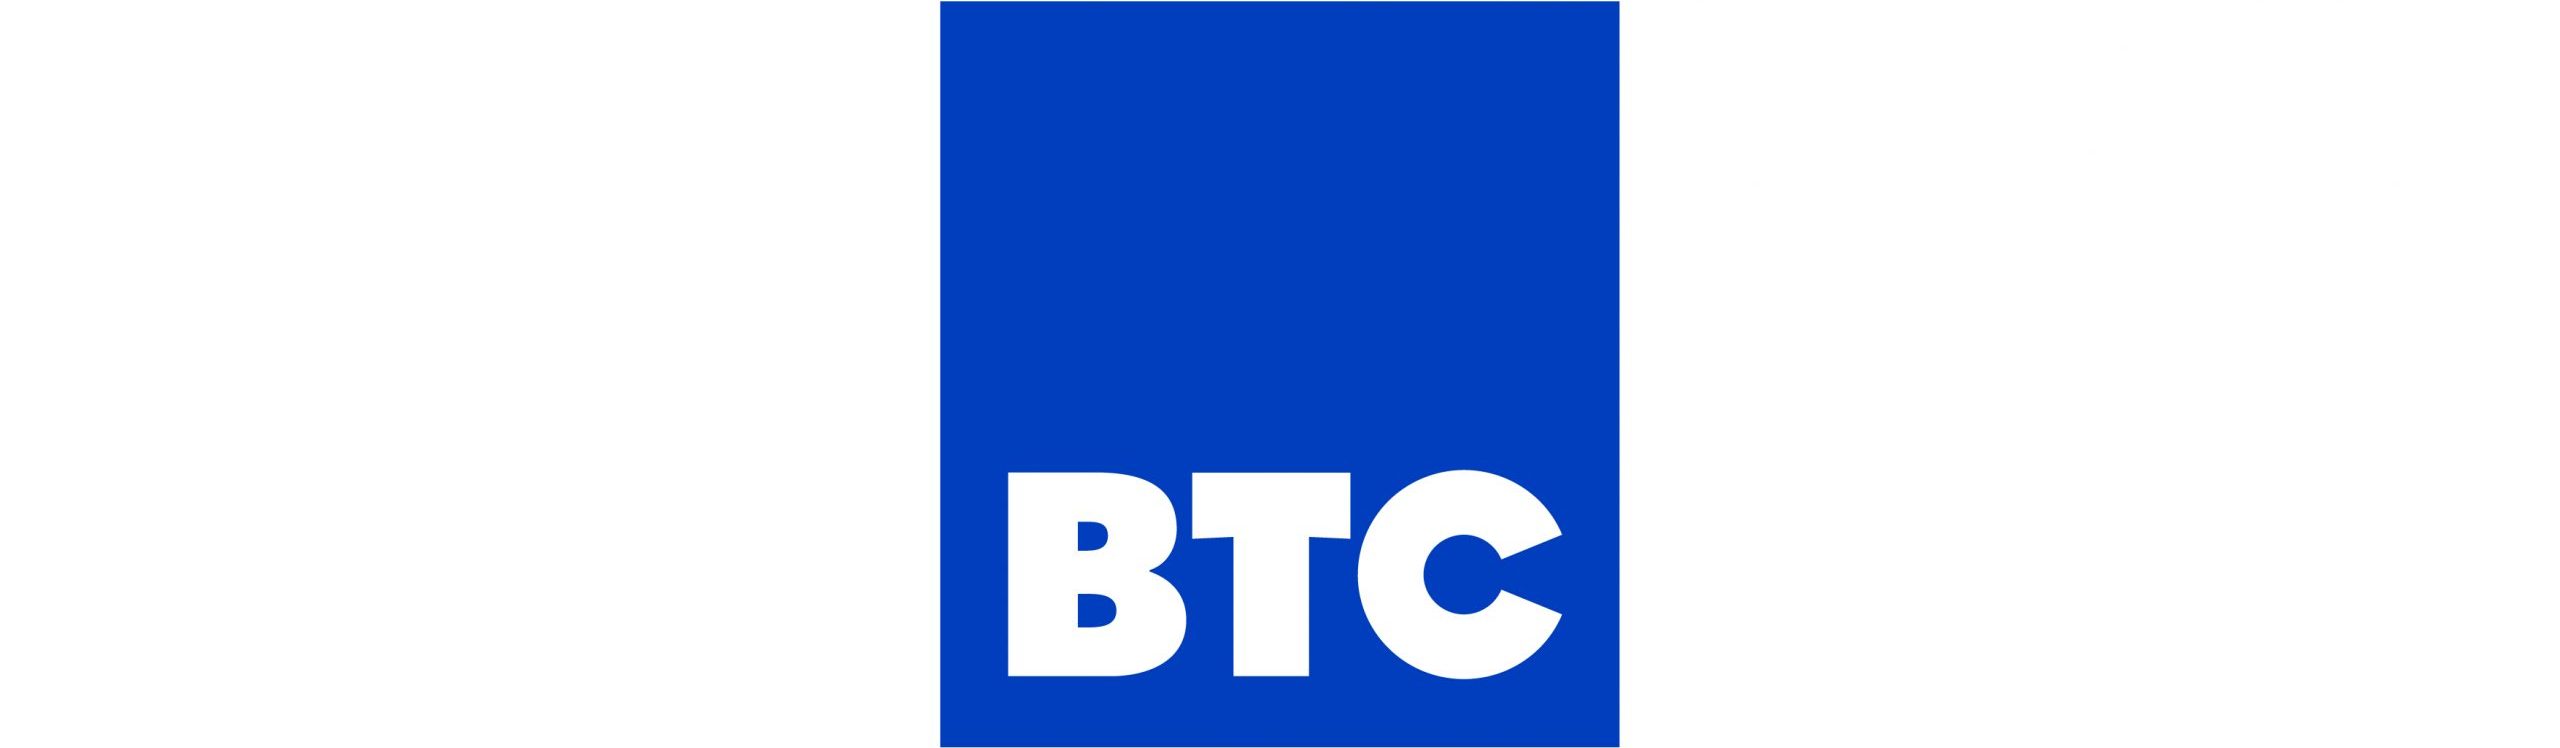 btc